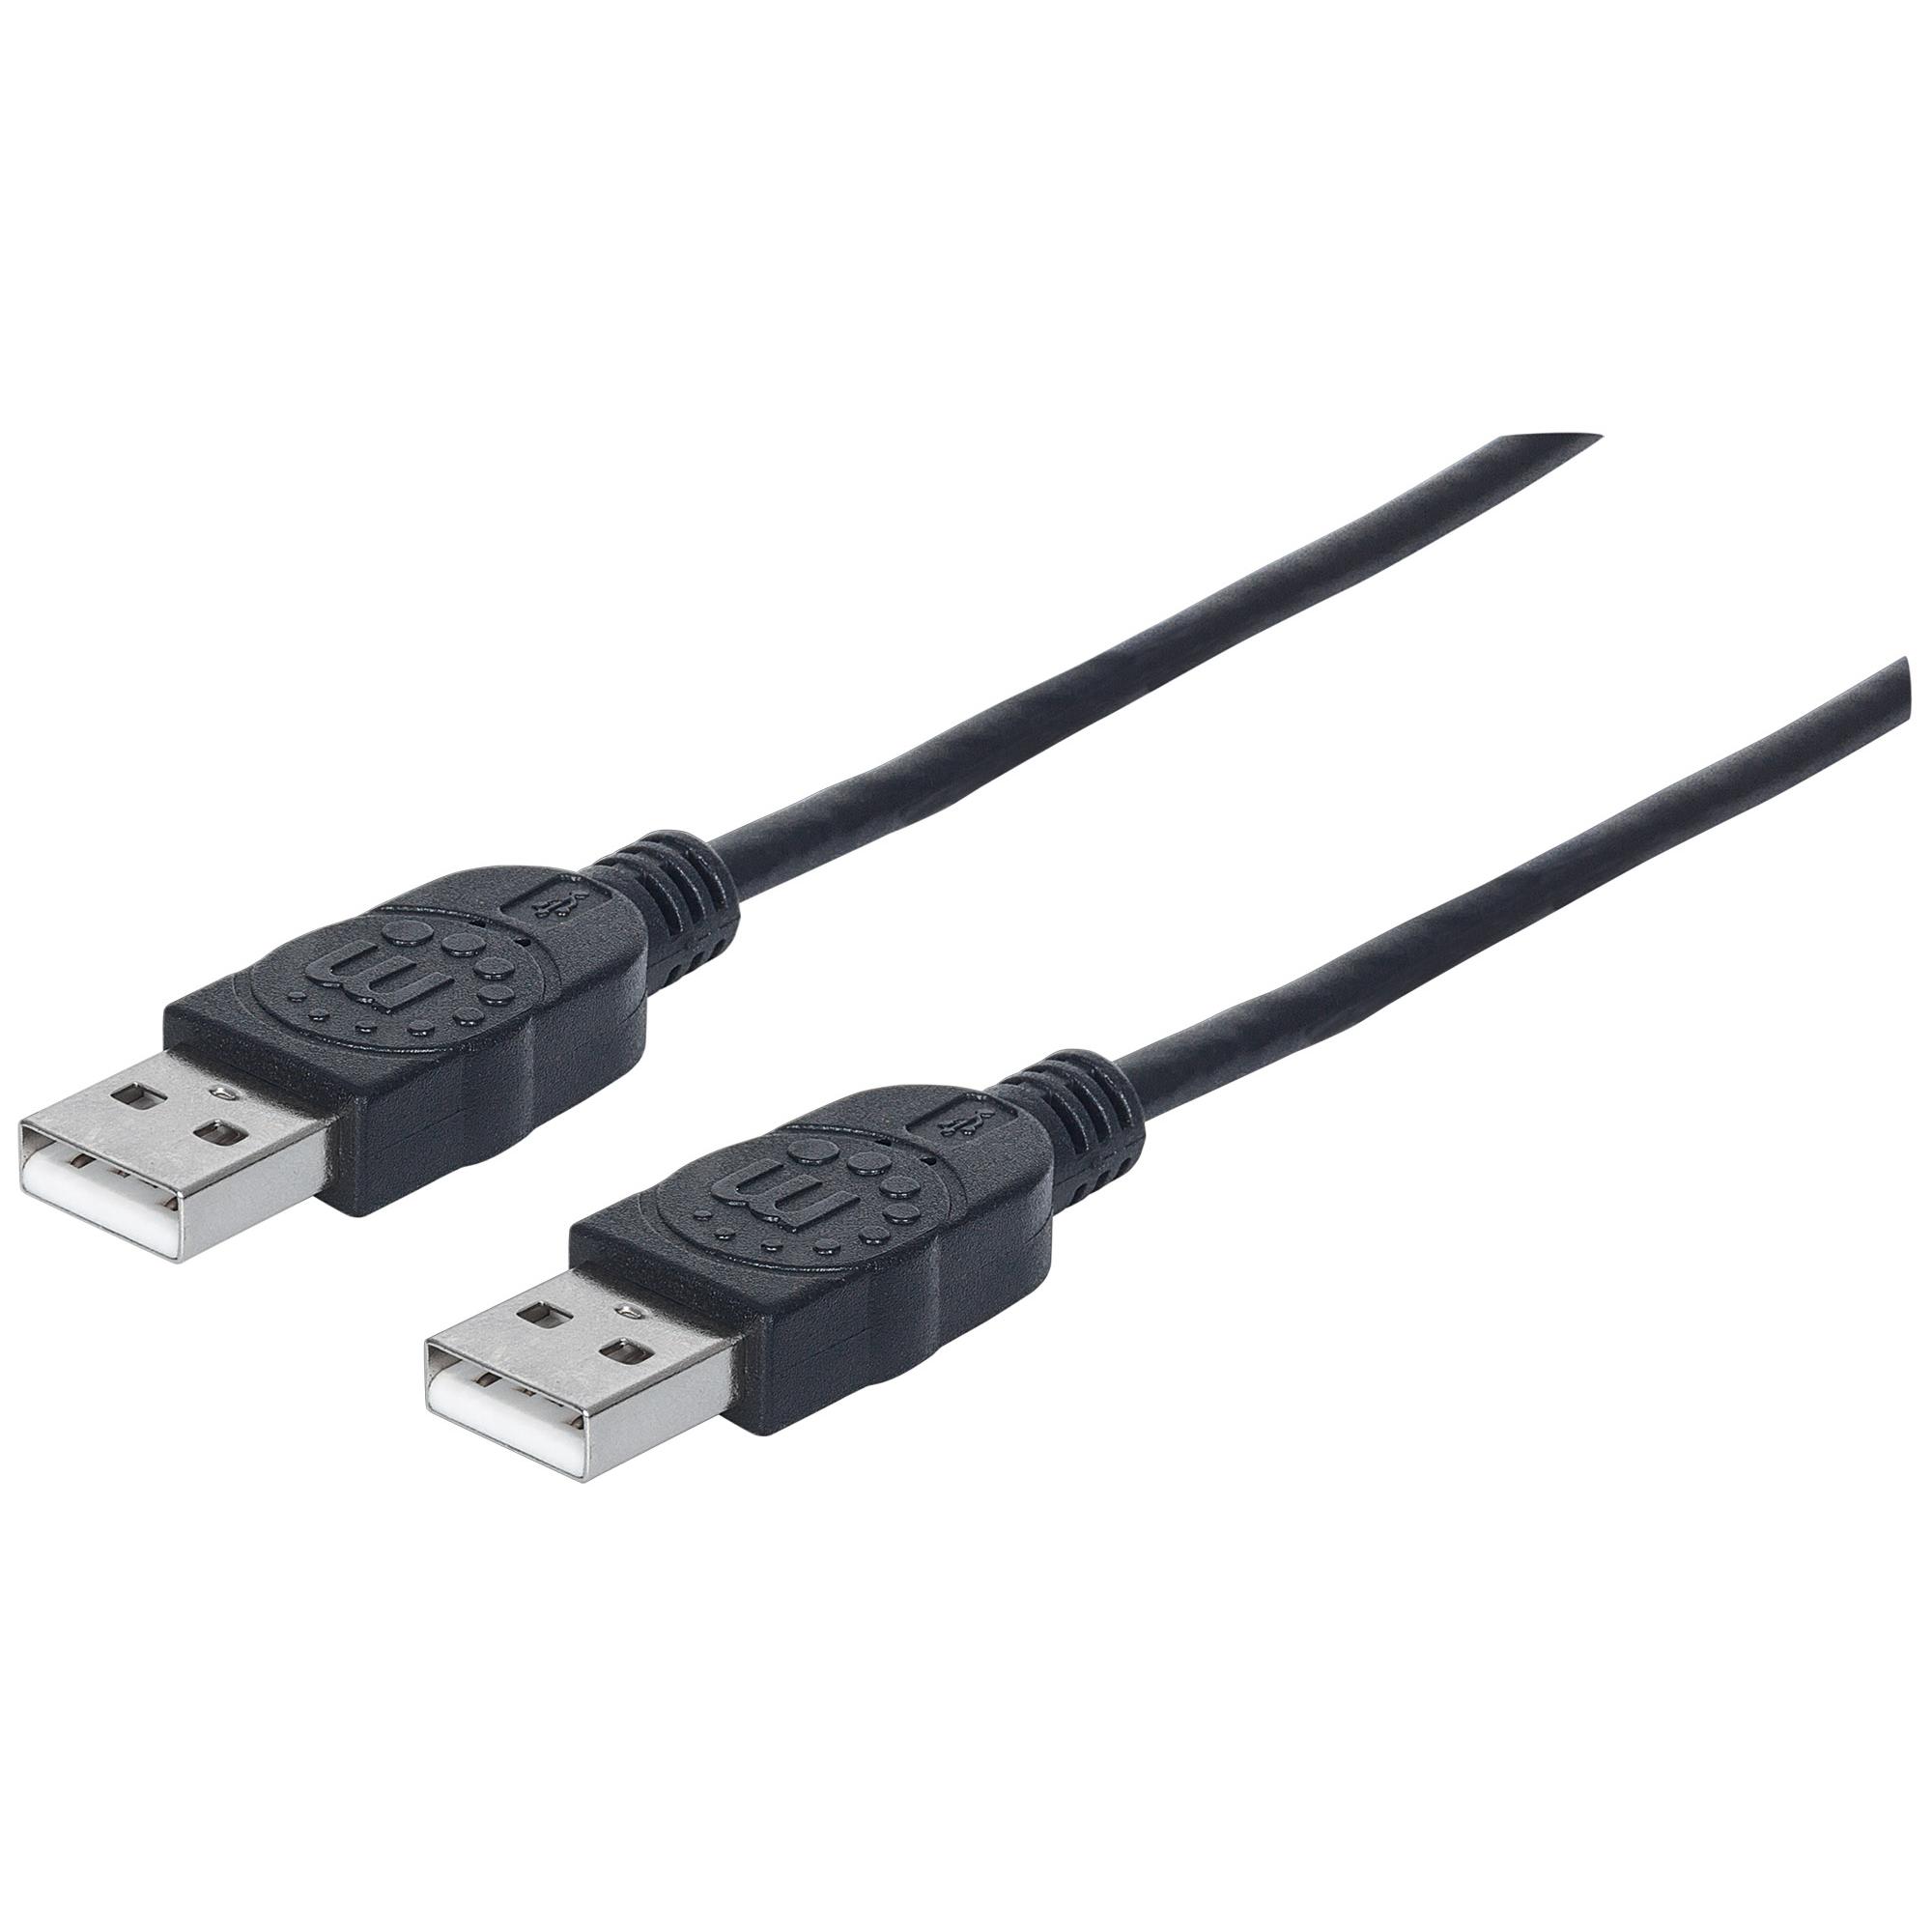 Cavo USB 2.0 A maschio/A maschio 5 m